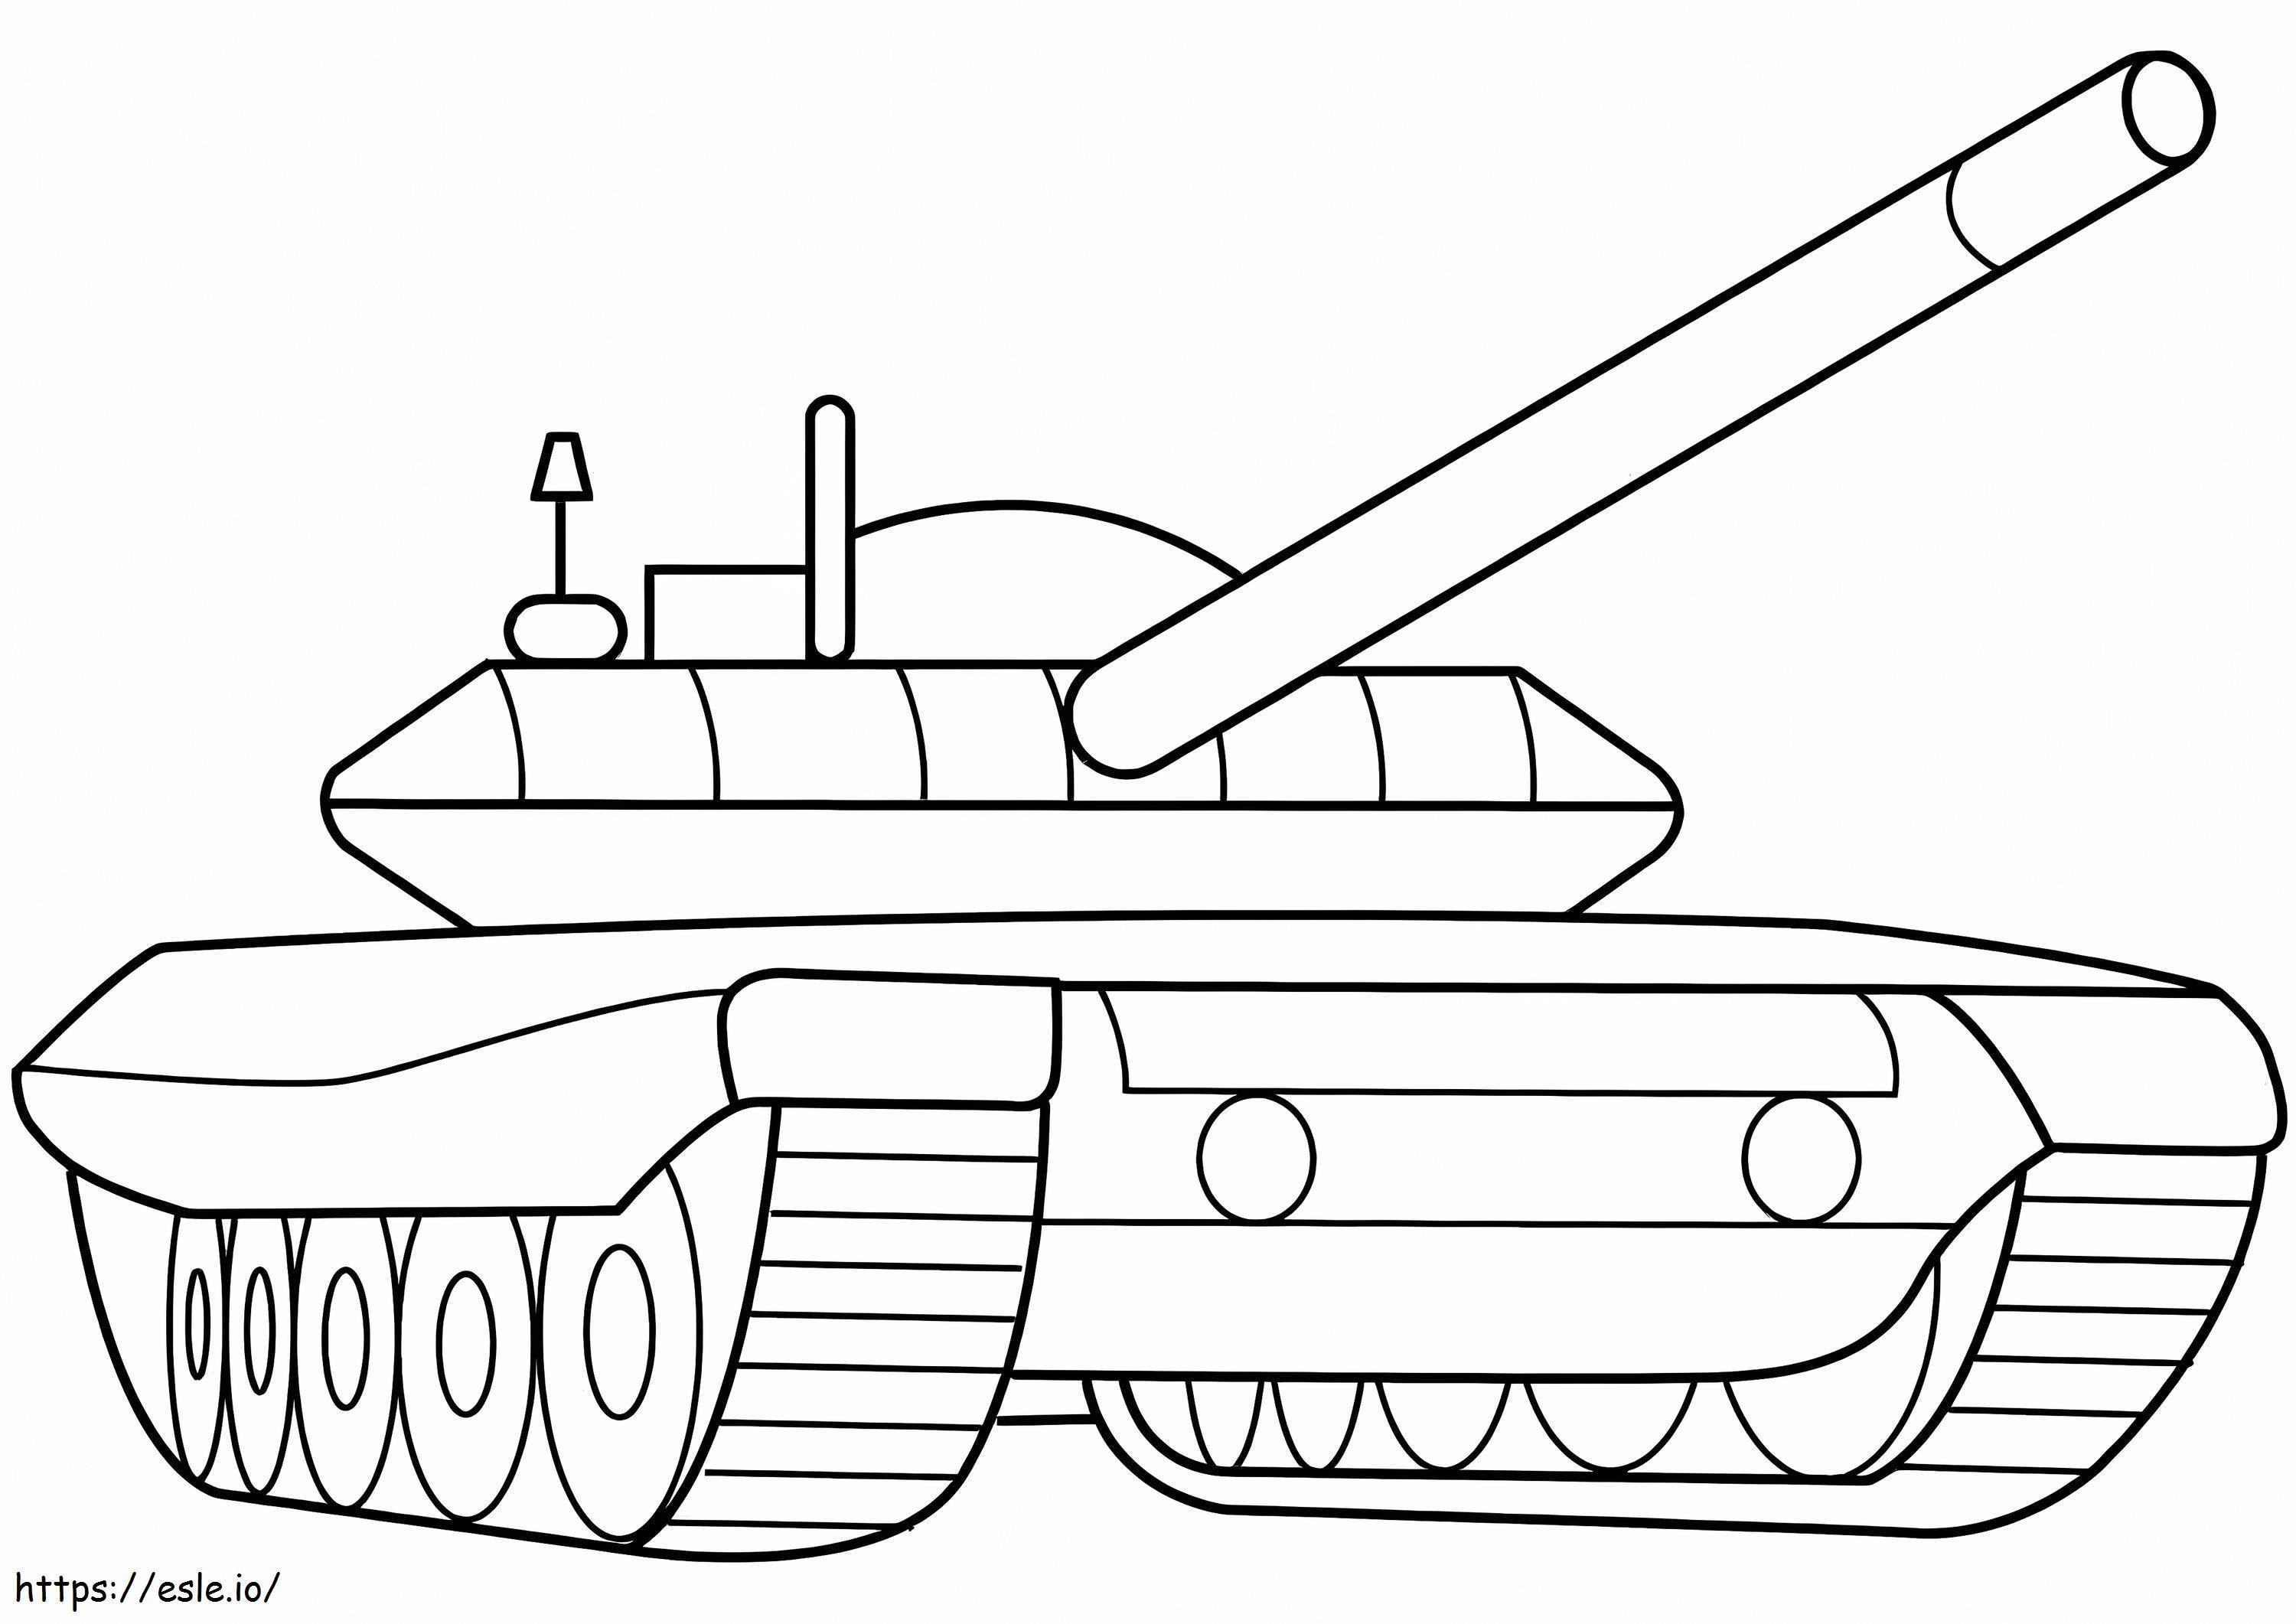 Militärischer Panzer ausmalbilder